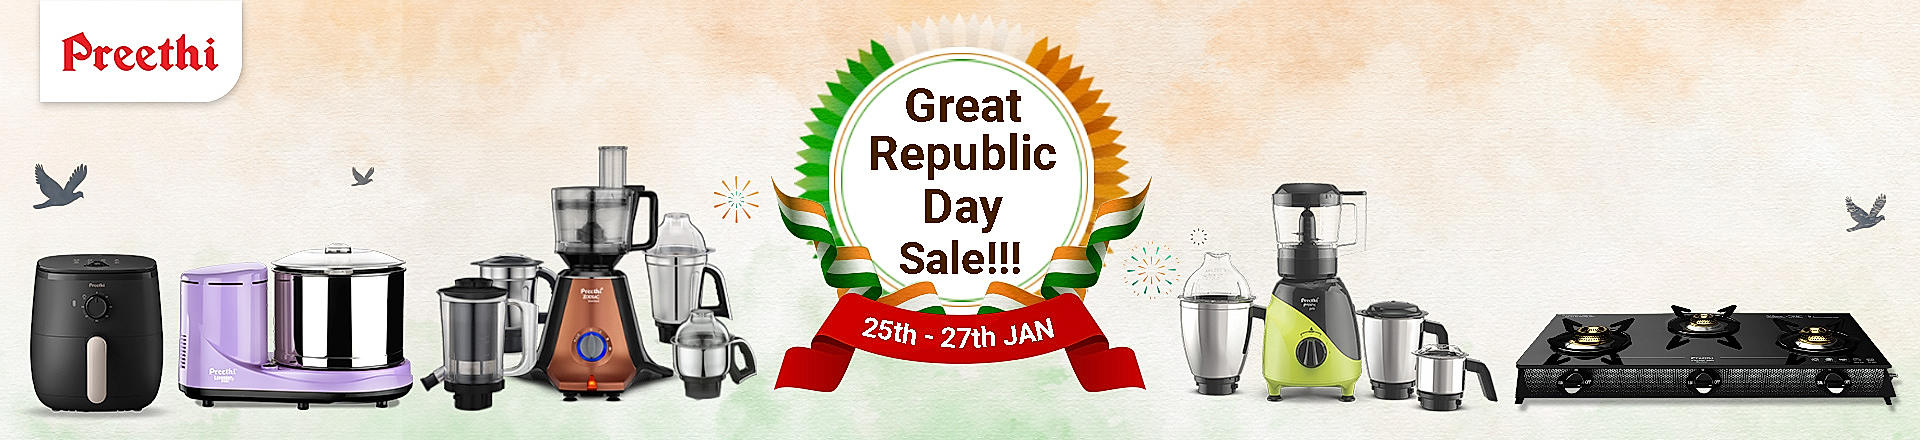 Republic Day Sale 2024